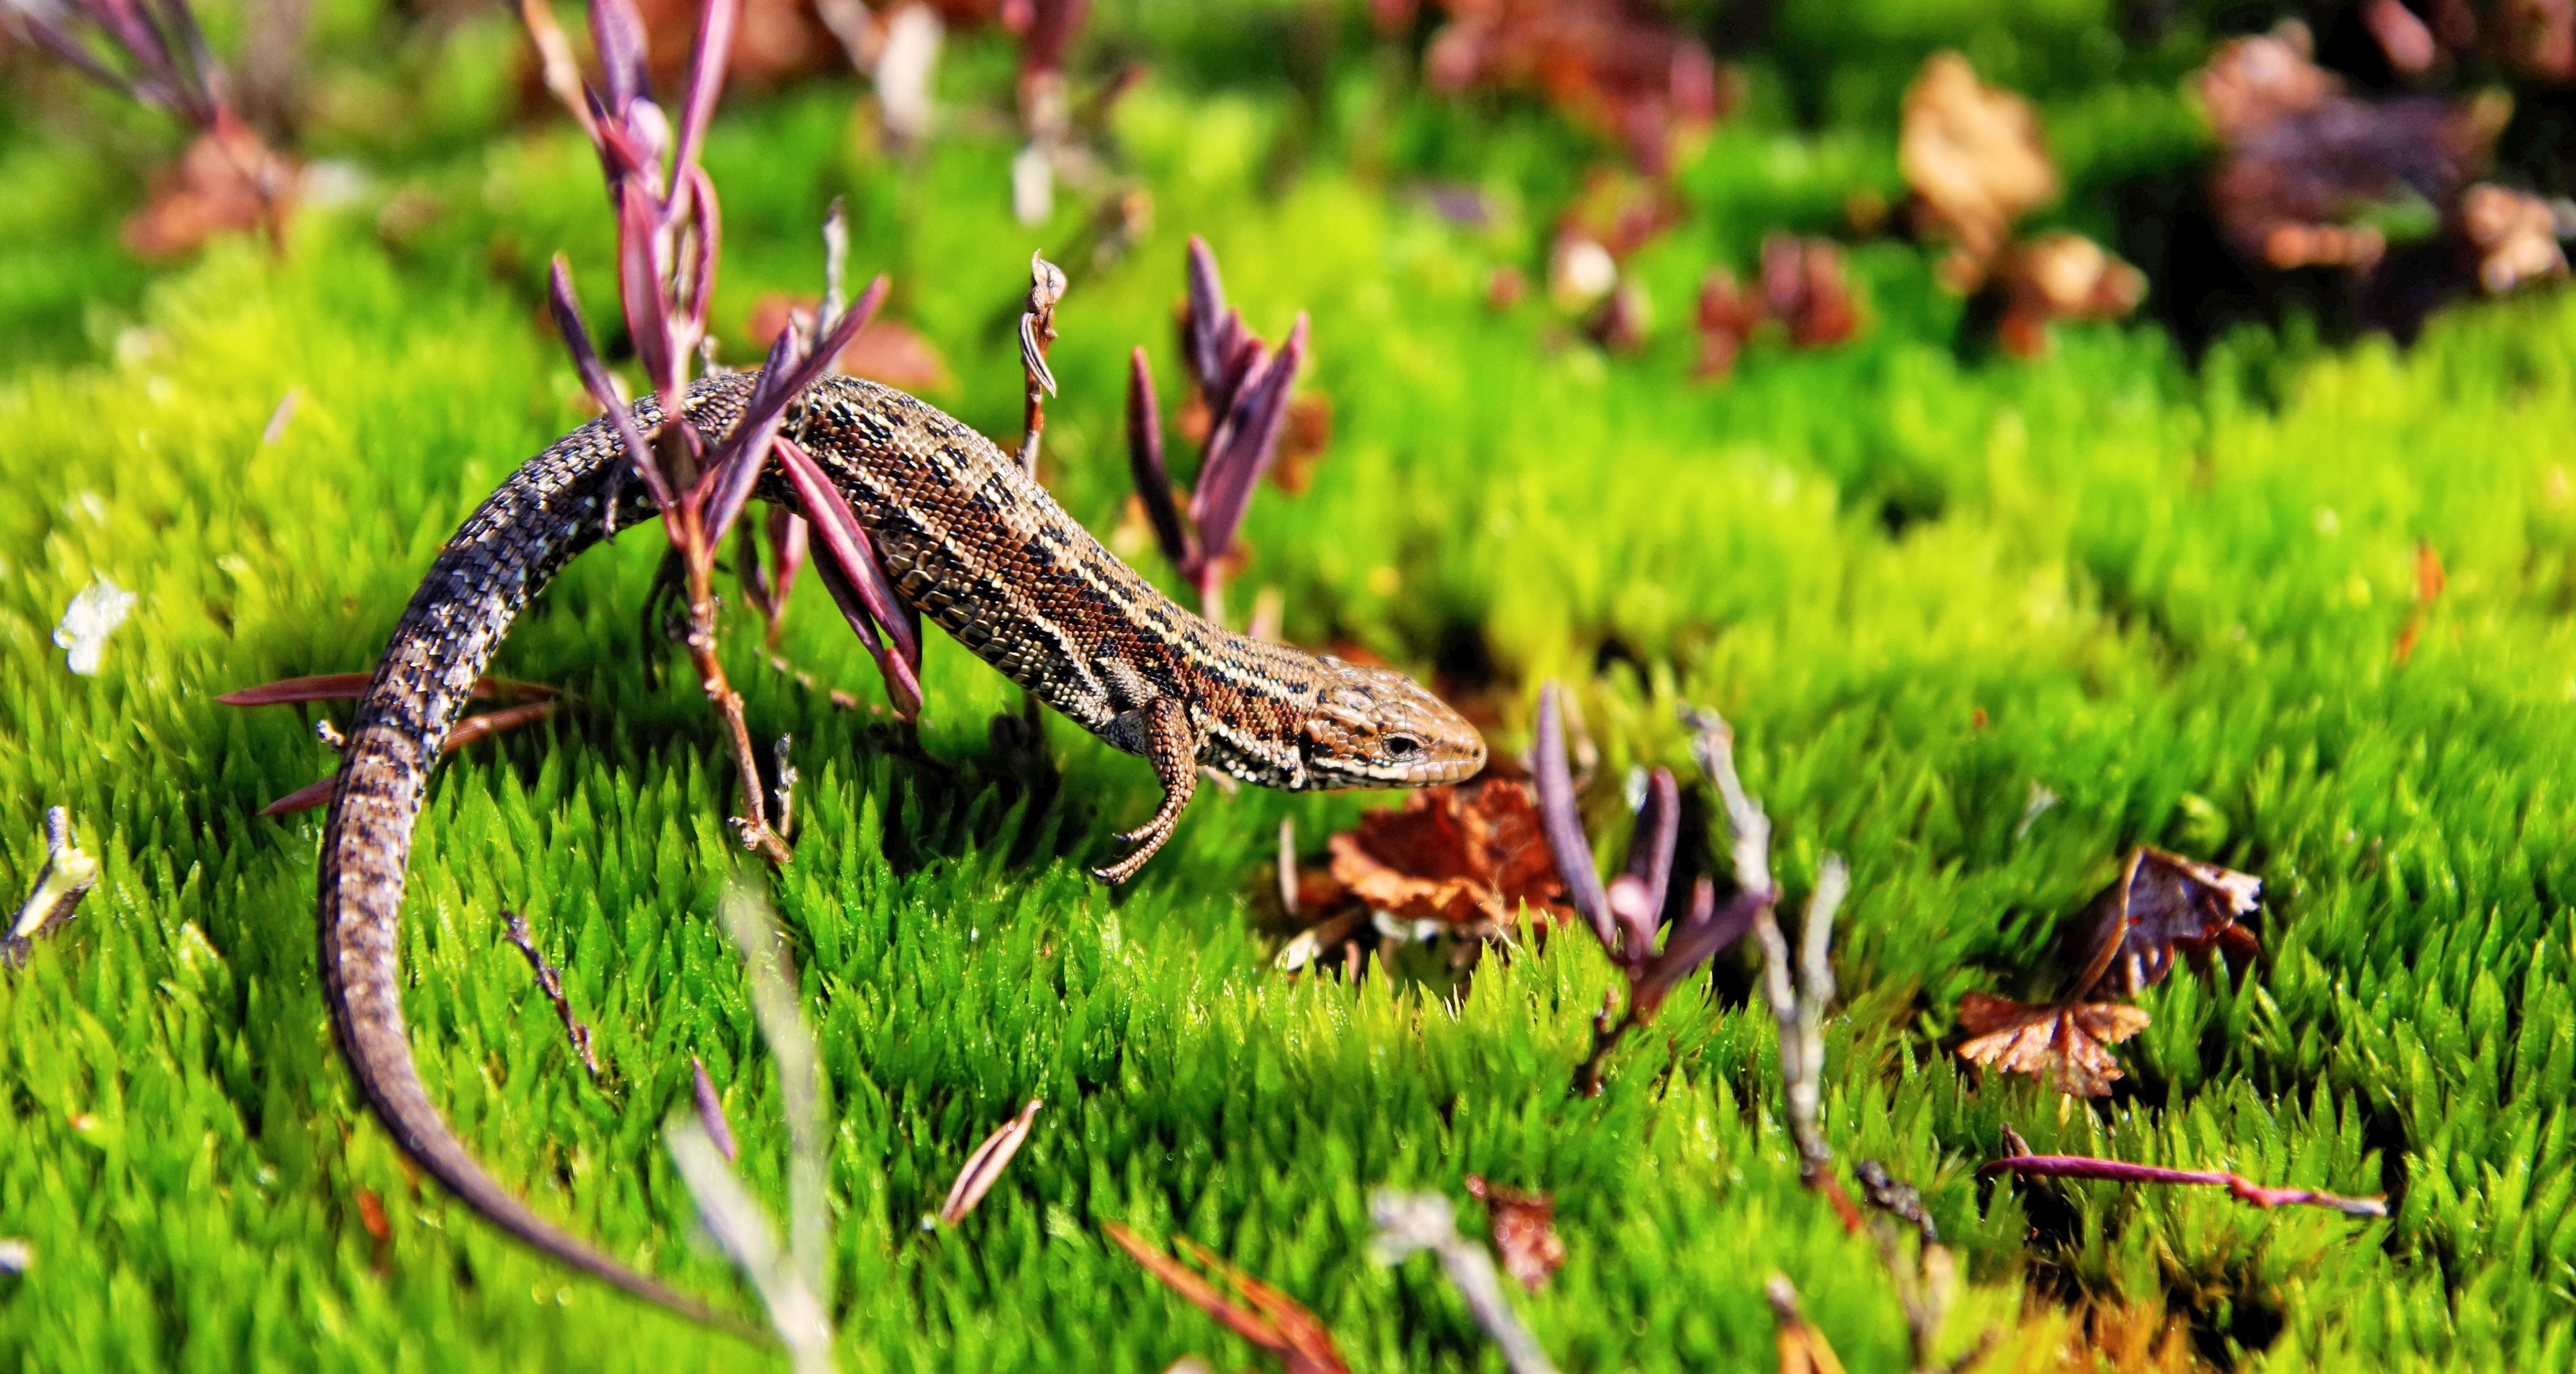 Brown gecko in green open field photo